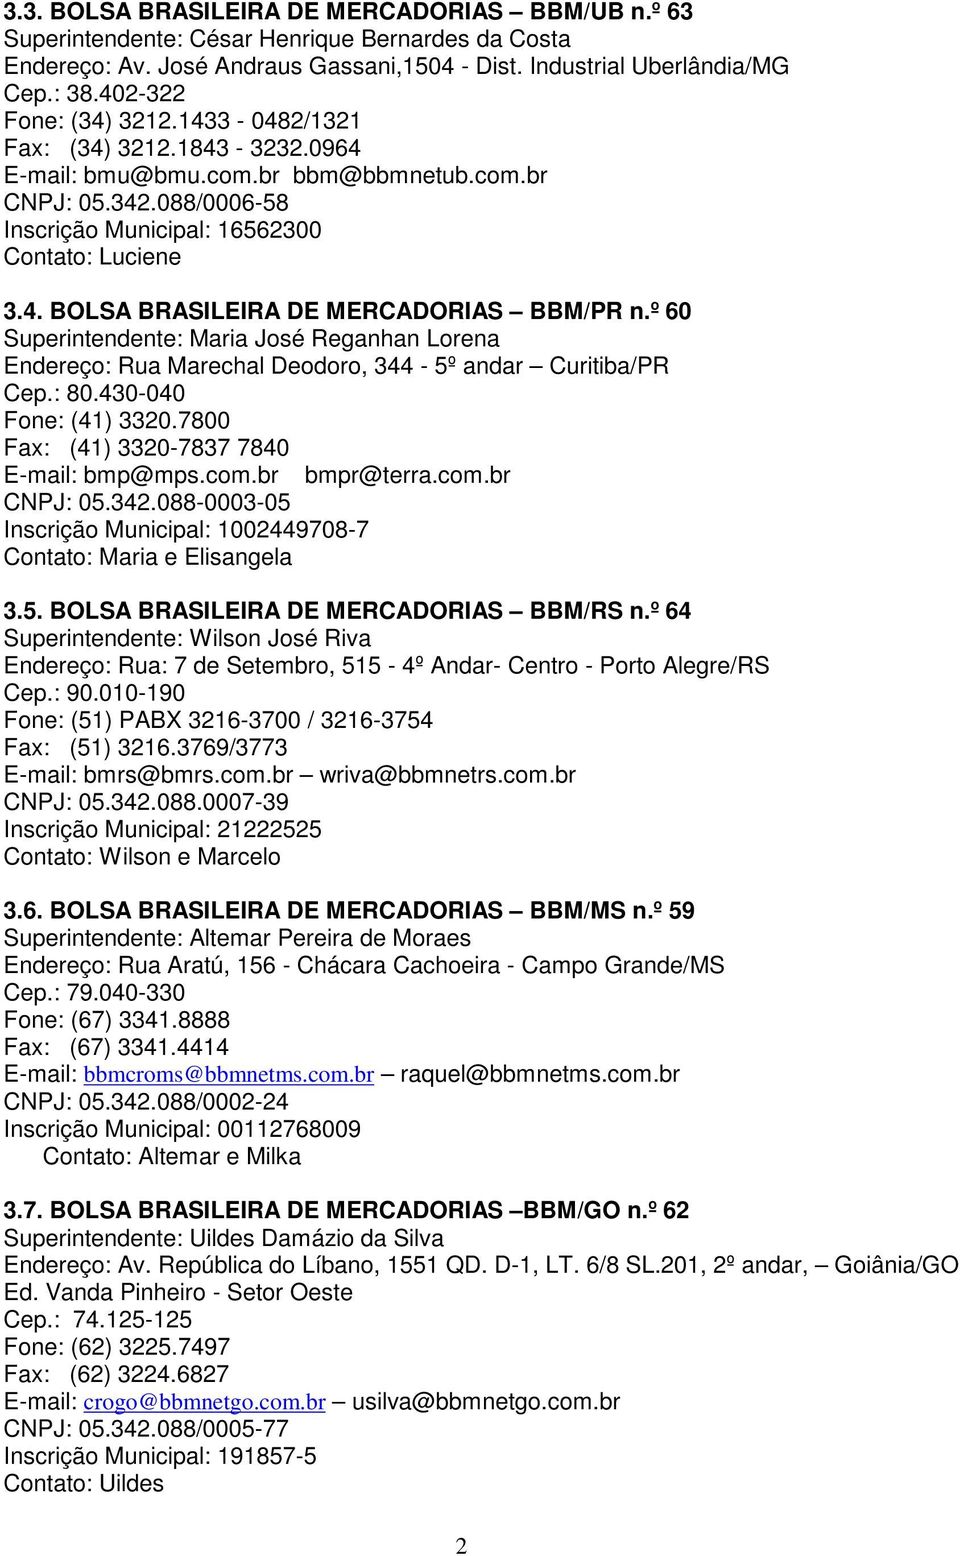 º 60 Superintendente: Maria José Reganhan Lorena Endereço: Rua Marechal Deodoro, 344-5º andar Curitiba/PR Cep.: 80.430-040 Fone: (41) 3320.7800 Fax: (41) 3320-7837 7840 E-mail: bmp@mps.com.